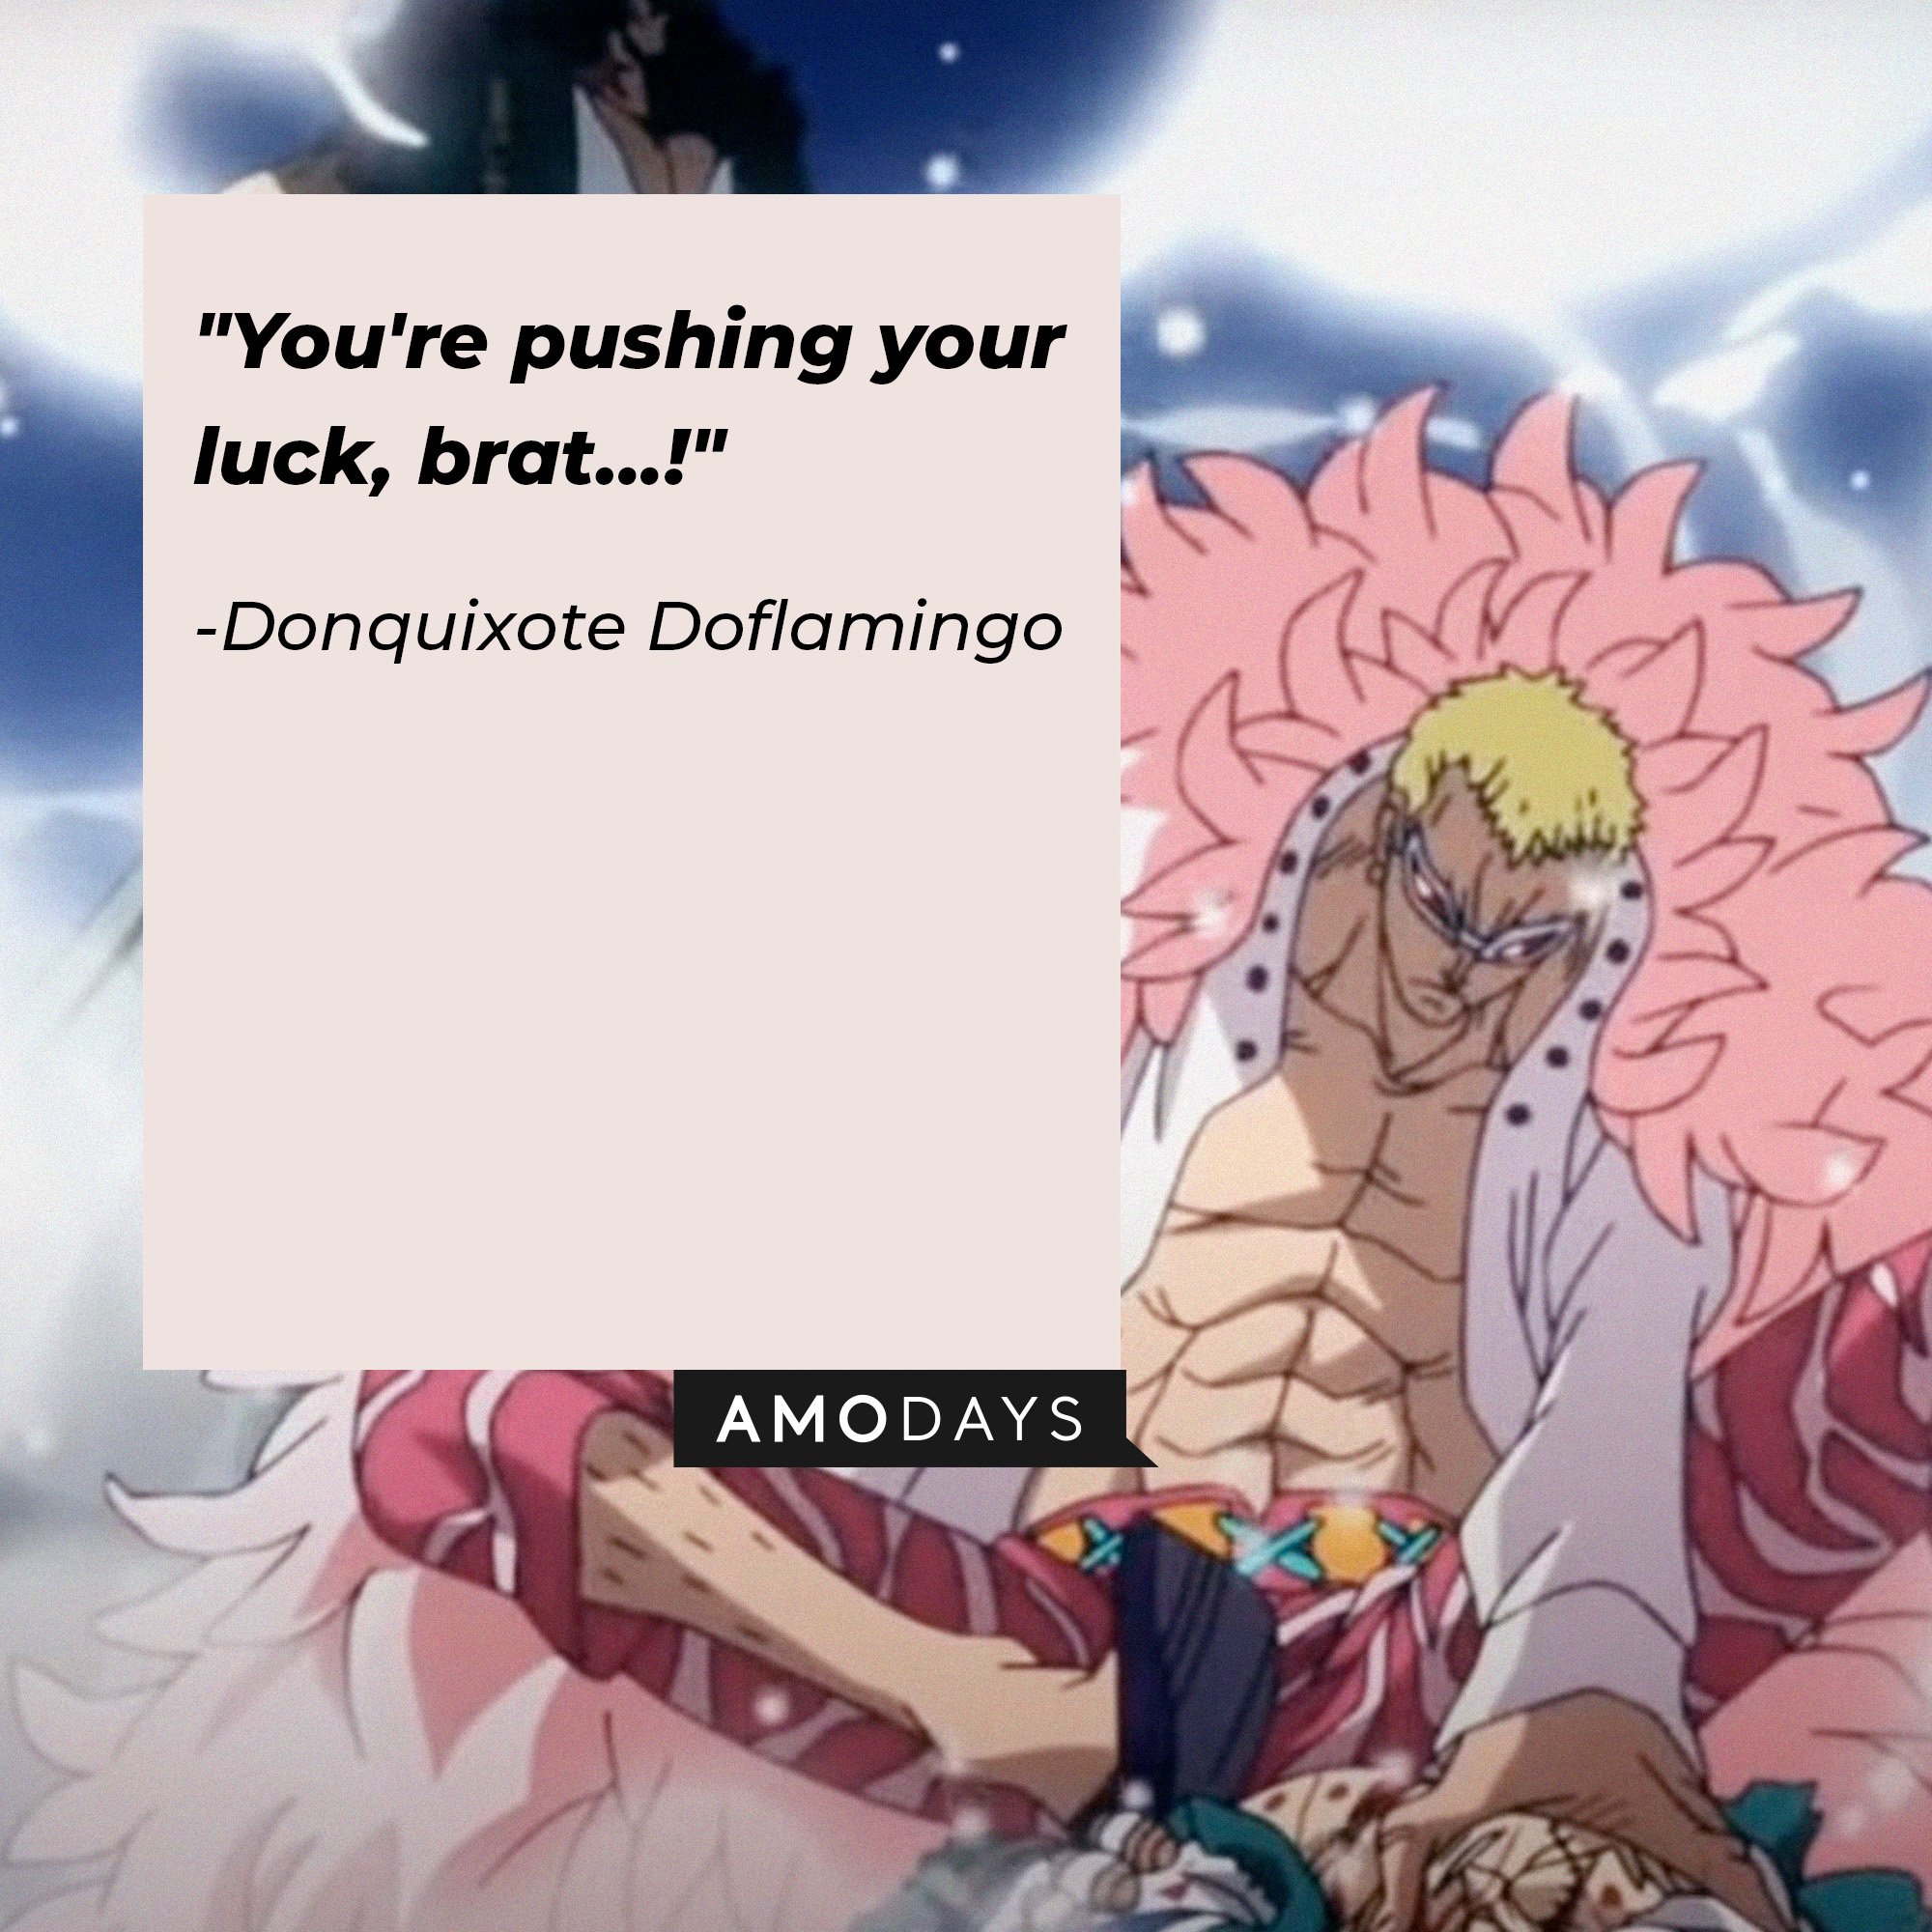 Donquixote Doflamingo’s quote: "You're pushing your luck, brat…!" | Image: AmoDays